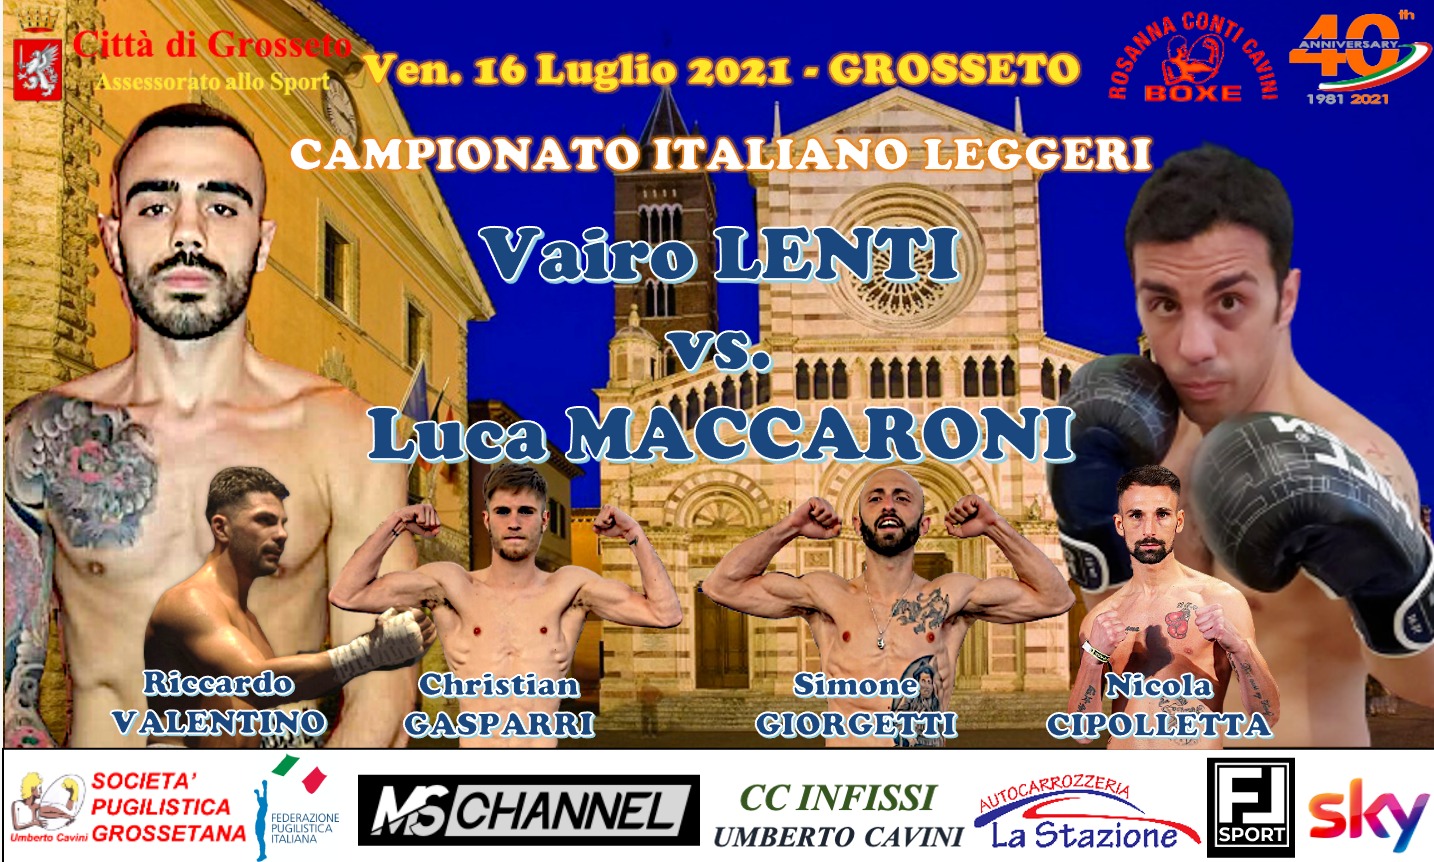 Il 16 luglio a Grosseto Vairo Lenti vs Luca Maccaroni per il Titolo Italiano Leggeri - Main event della Serata Conti Cavini 